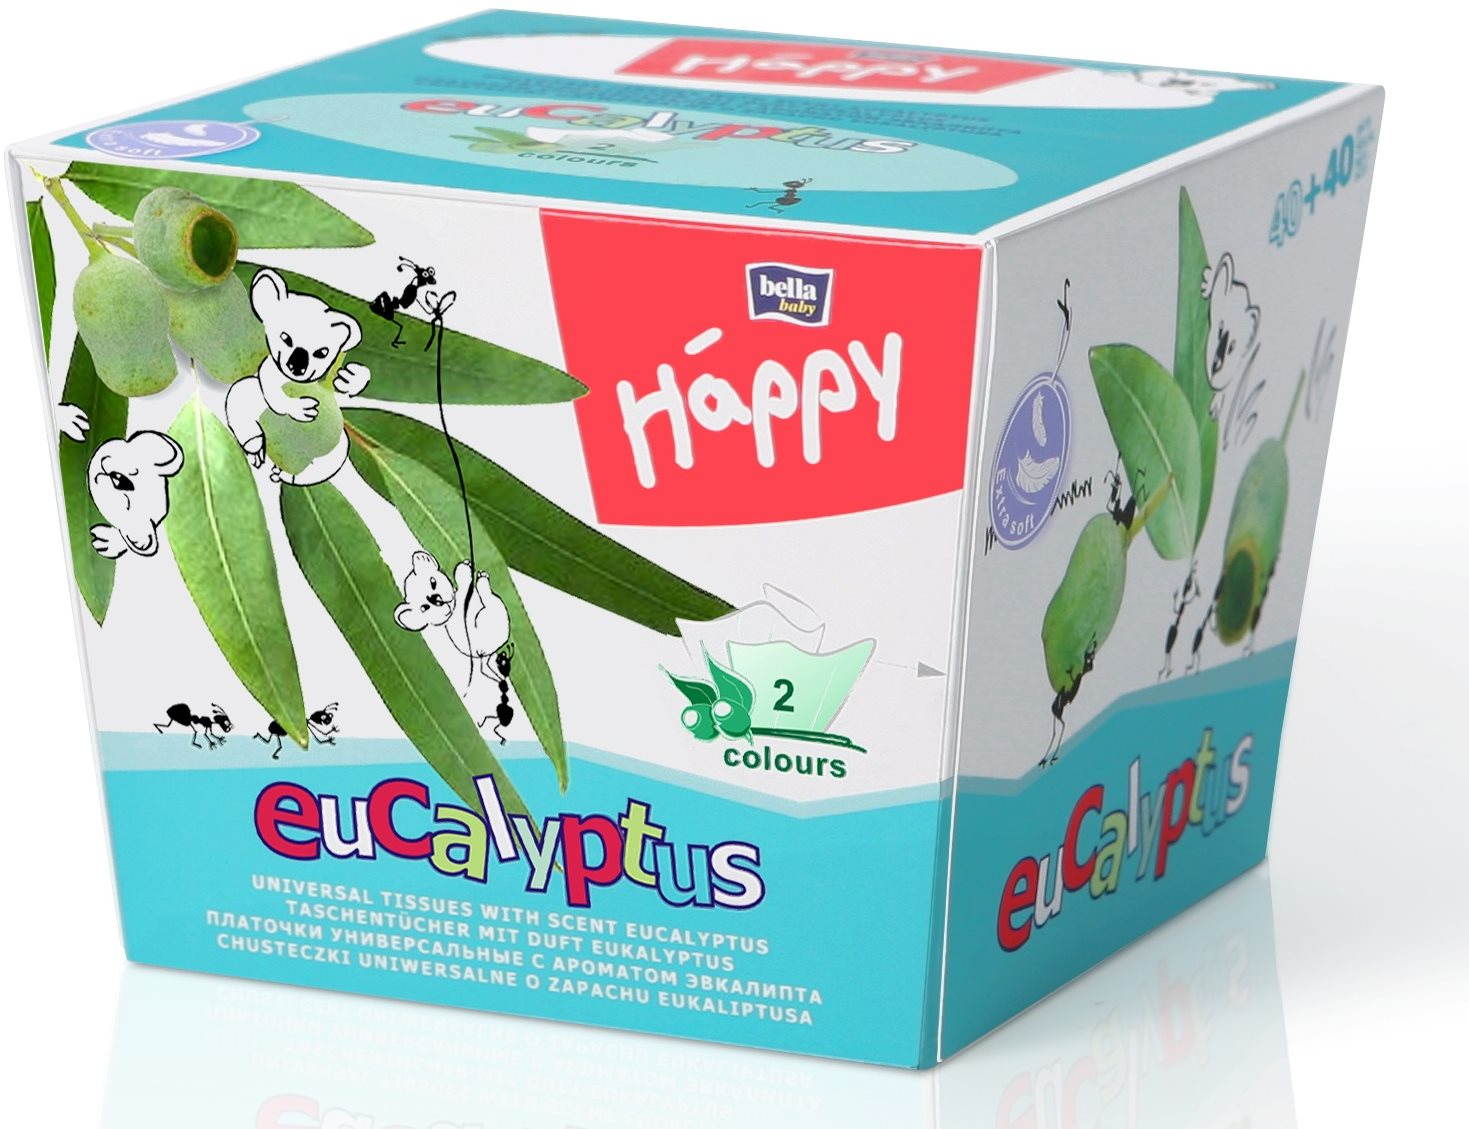 Papírzsebkendő BELLA Baby Happy Eucalyptus (80 db)